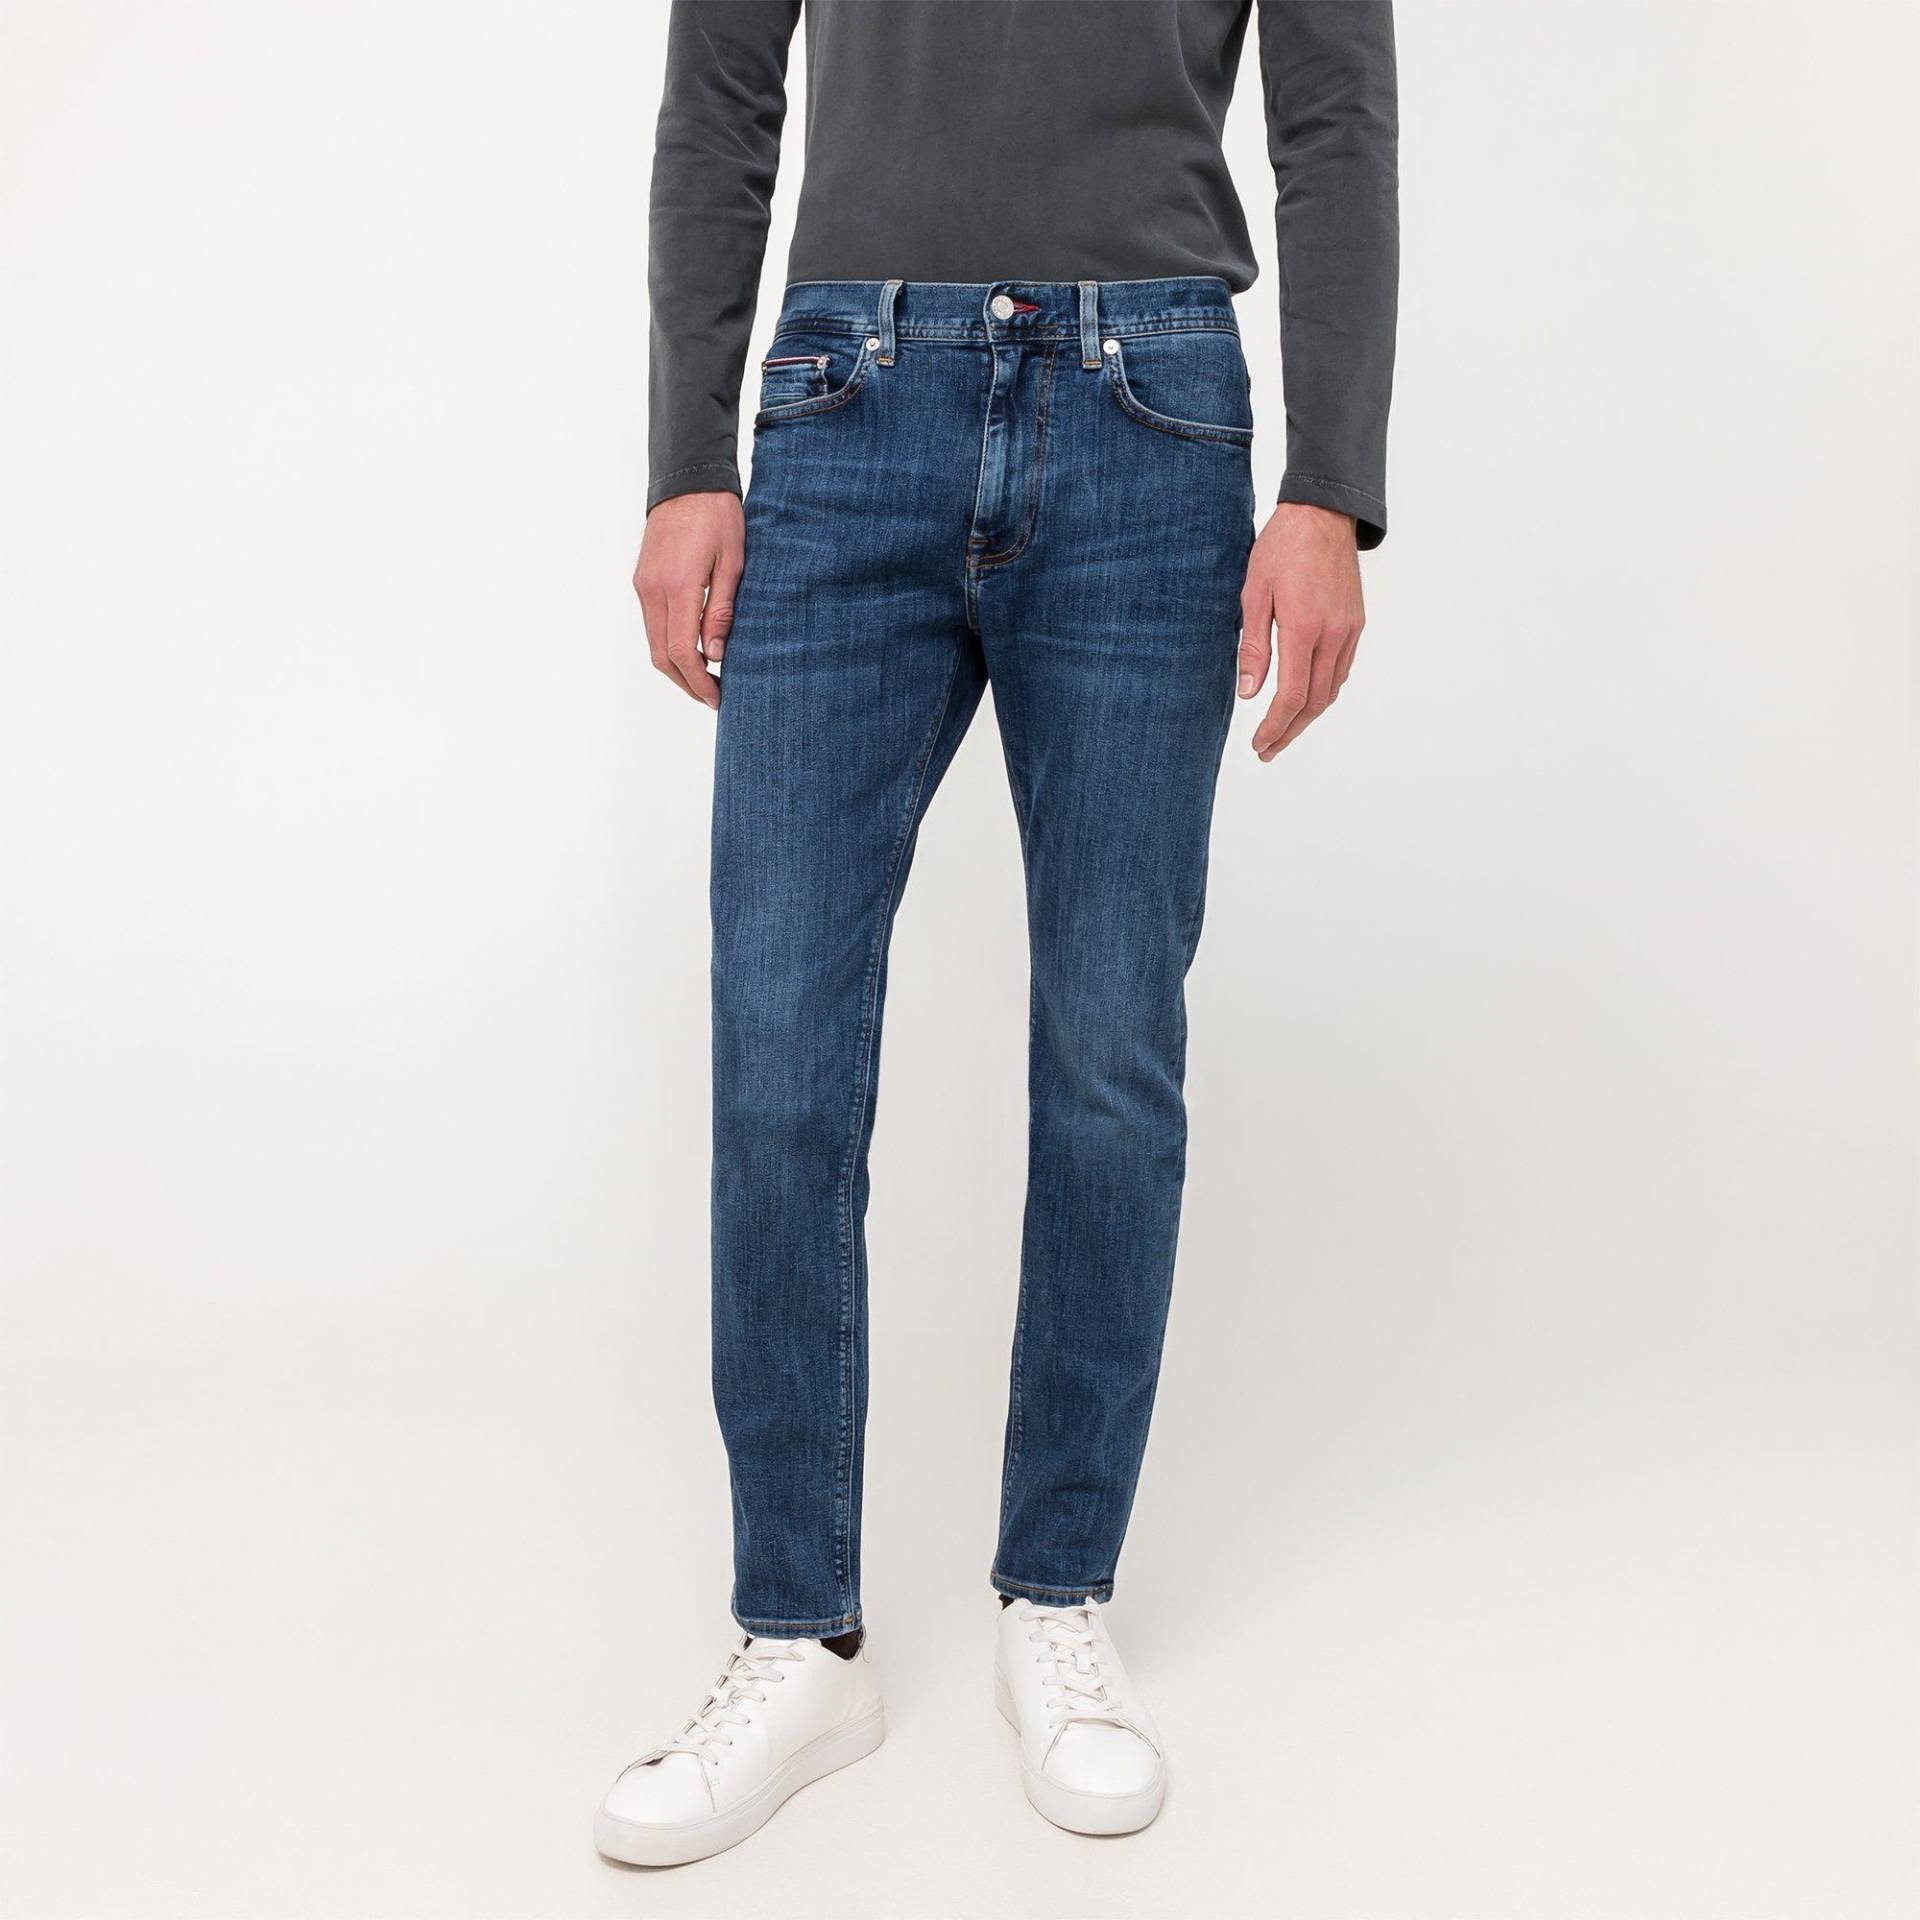 Jeans, Slim Fit Herren Blau  L30/W36 von TOMMY HILFIGER